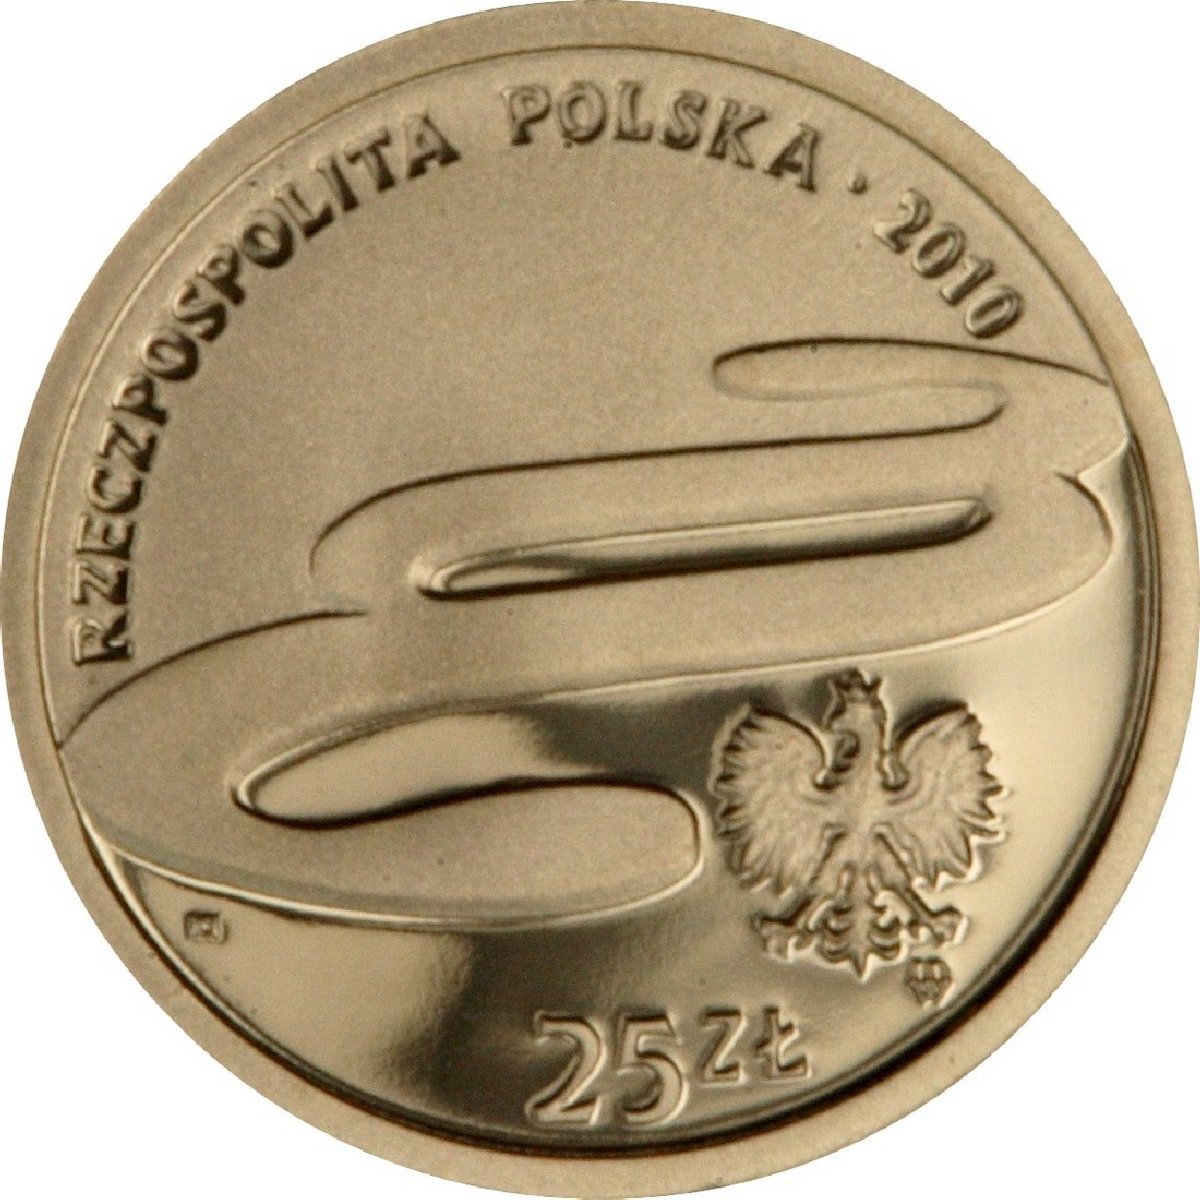 PL 25 Zloty 2010 monogram MW